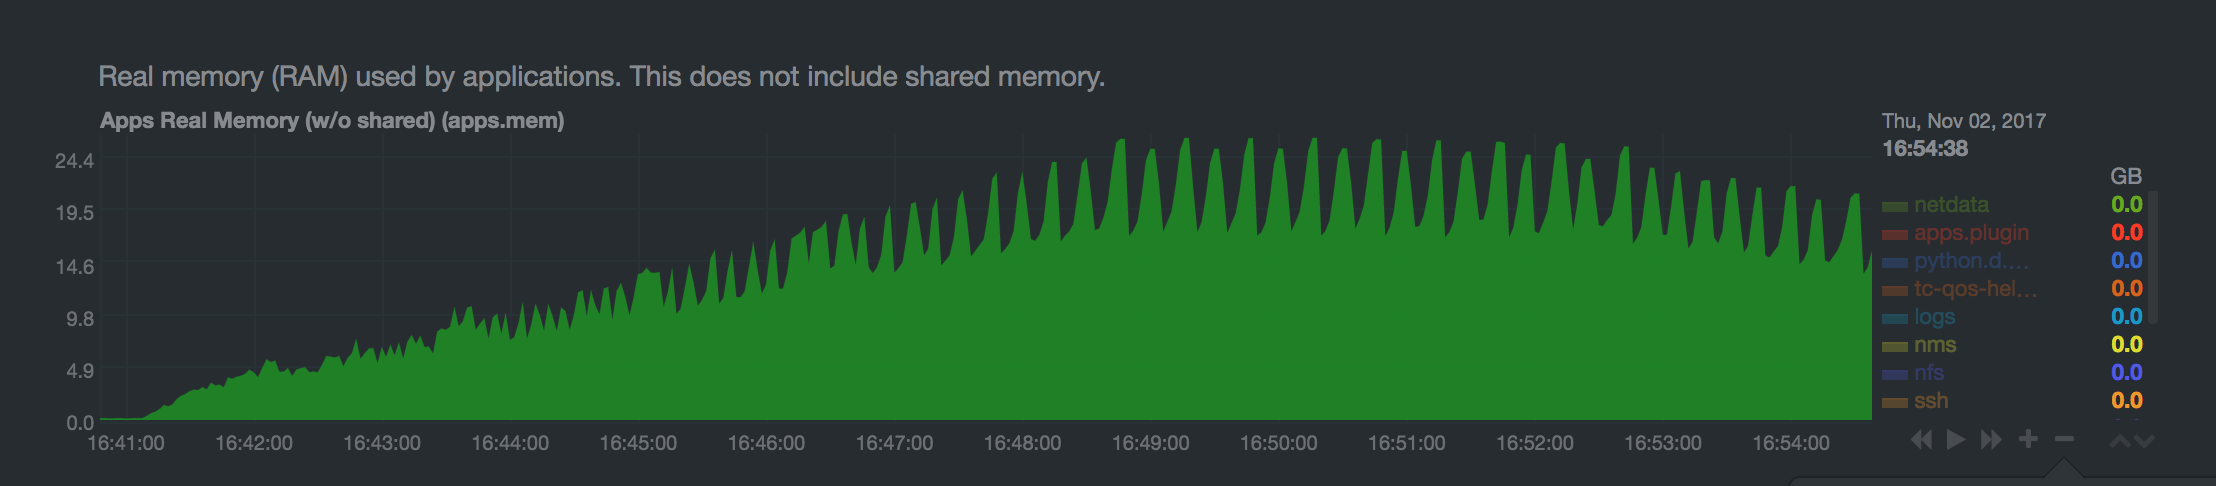 Queue under load memory usage